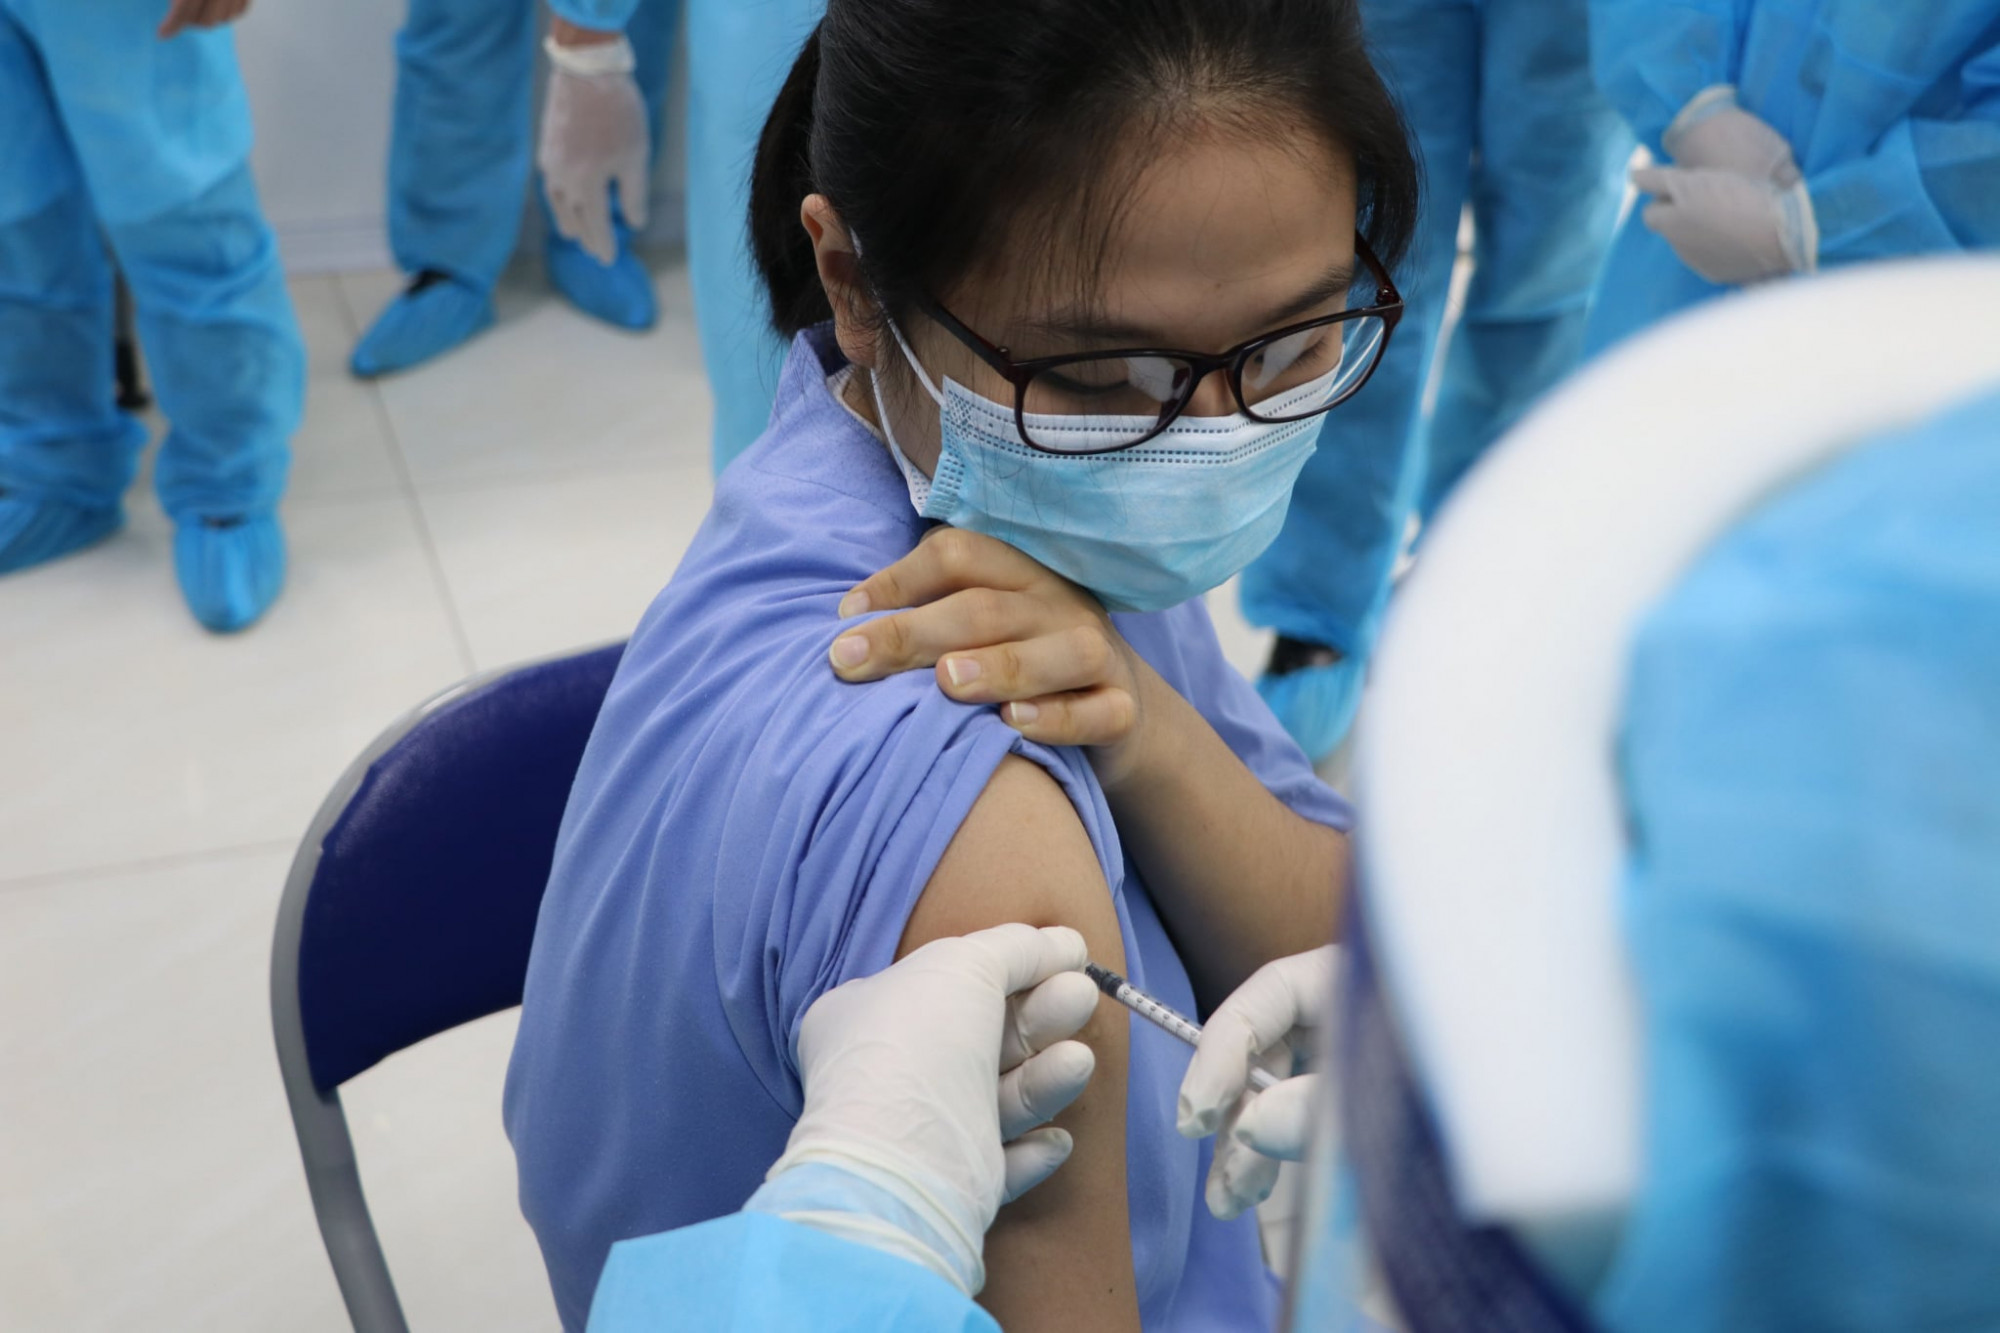 Thủ tướng Phạm Minh Chính yêu cầu Bộ trưởng Bộ Y tế chỉ đạo các biện pháp đẩy nhanh chiến dịch tiêm vắc xin phòng COVID-19